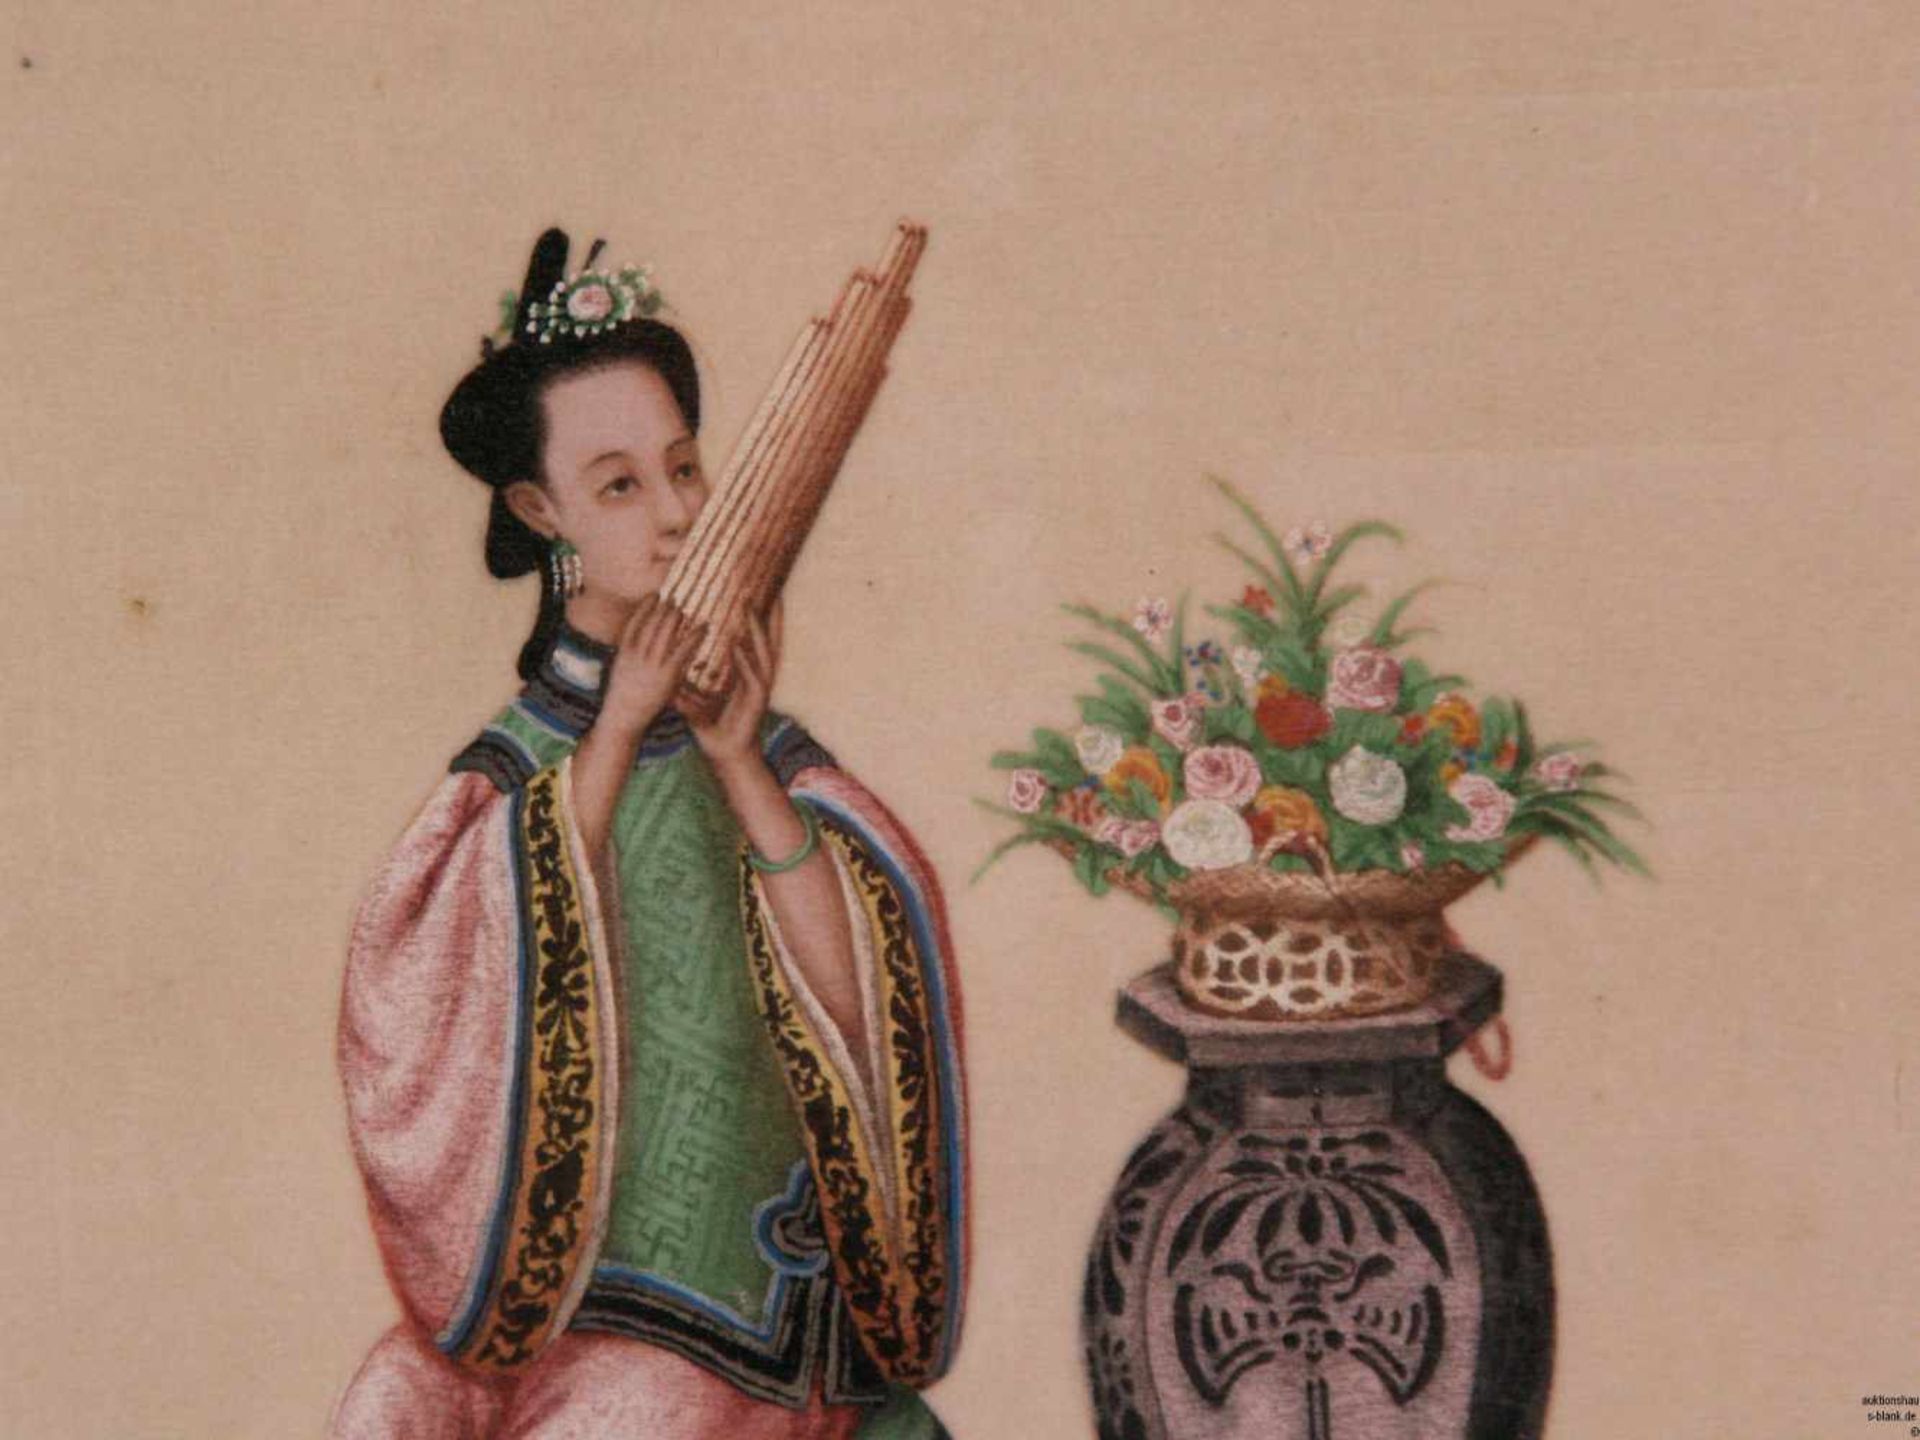 Zwei Darstellungen von Aristokraten - China, polychrome Pinselmalerei auf Reispapier, 1x Pfeife - Bild 6 aus 7